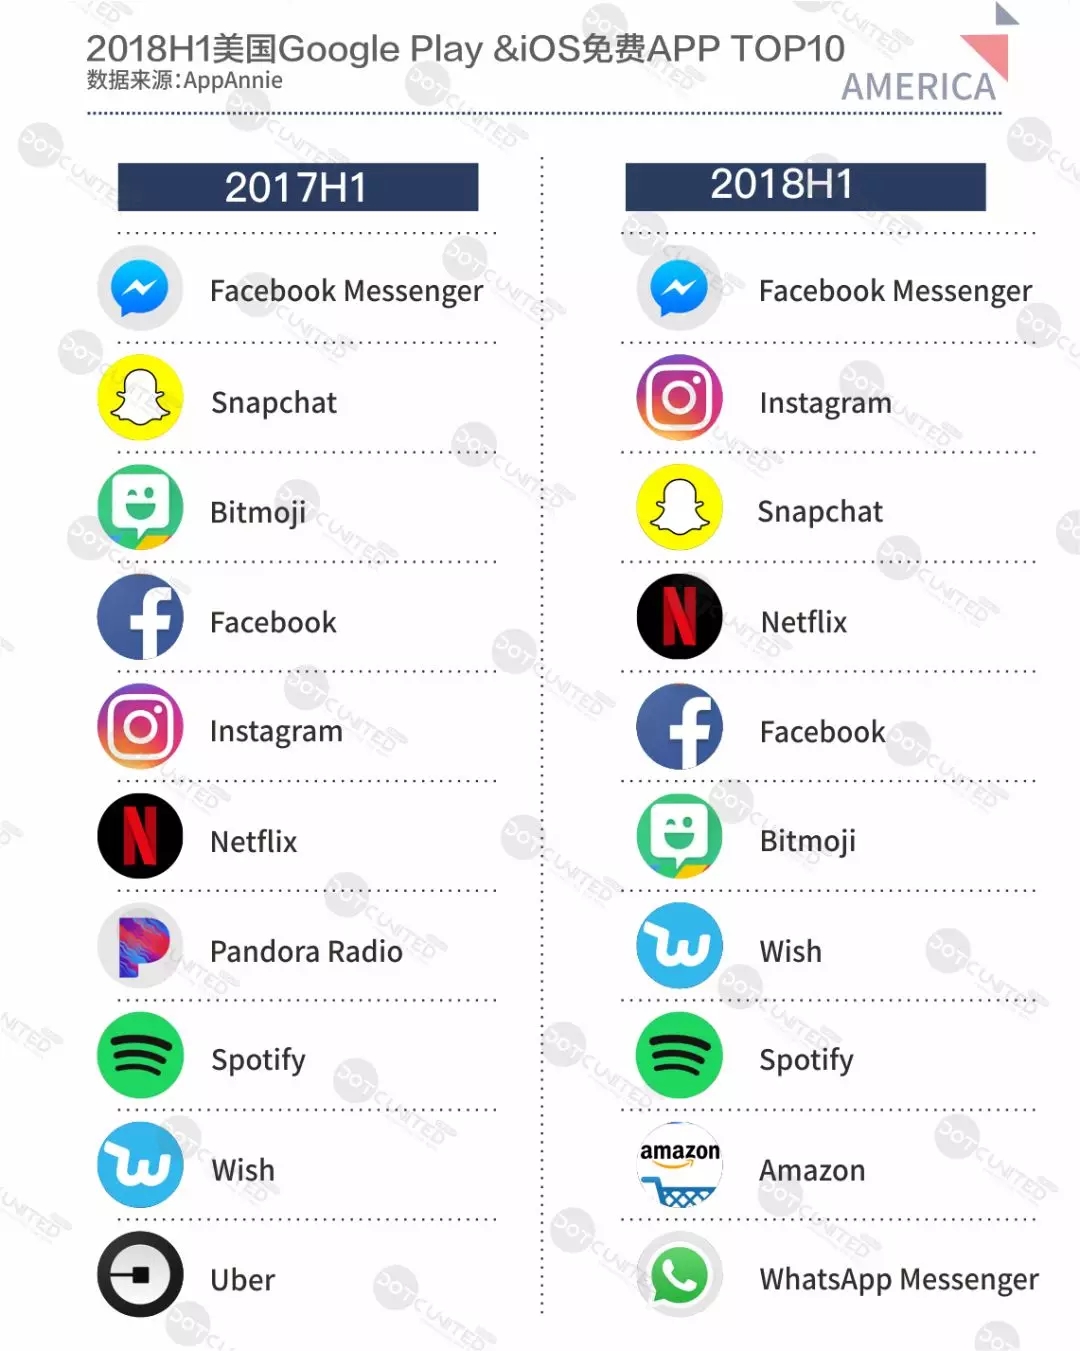 社交通讯产品垄断头部榜单 Facebook messenger 蝉联榜首